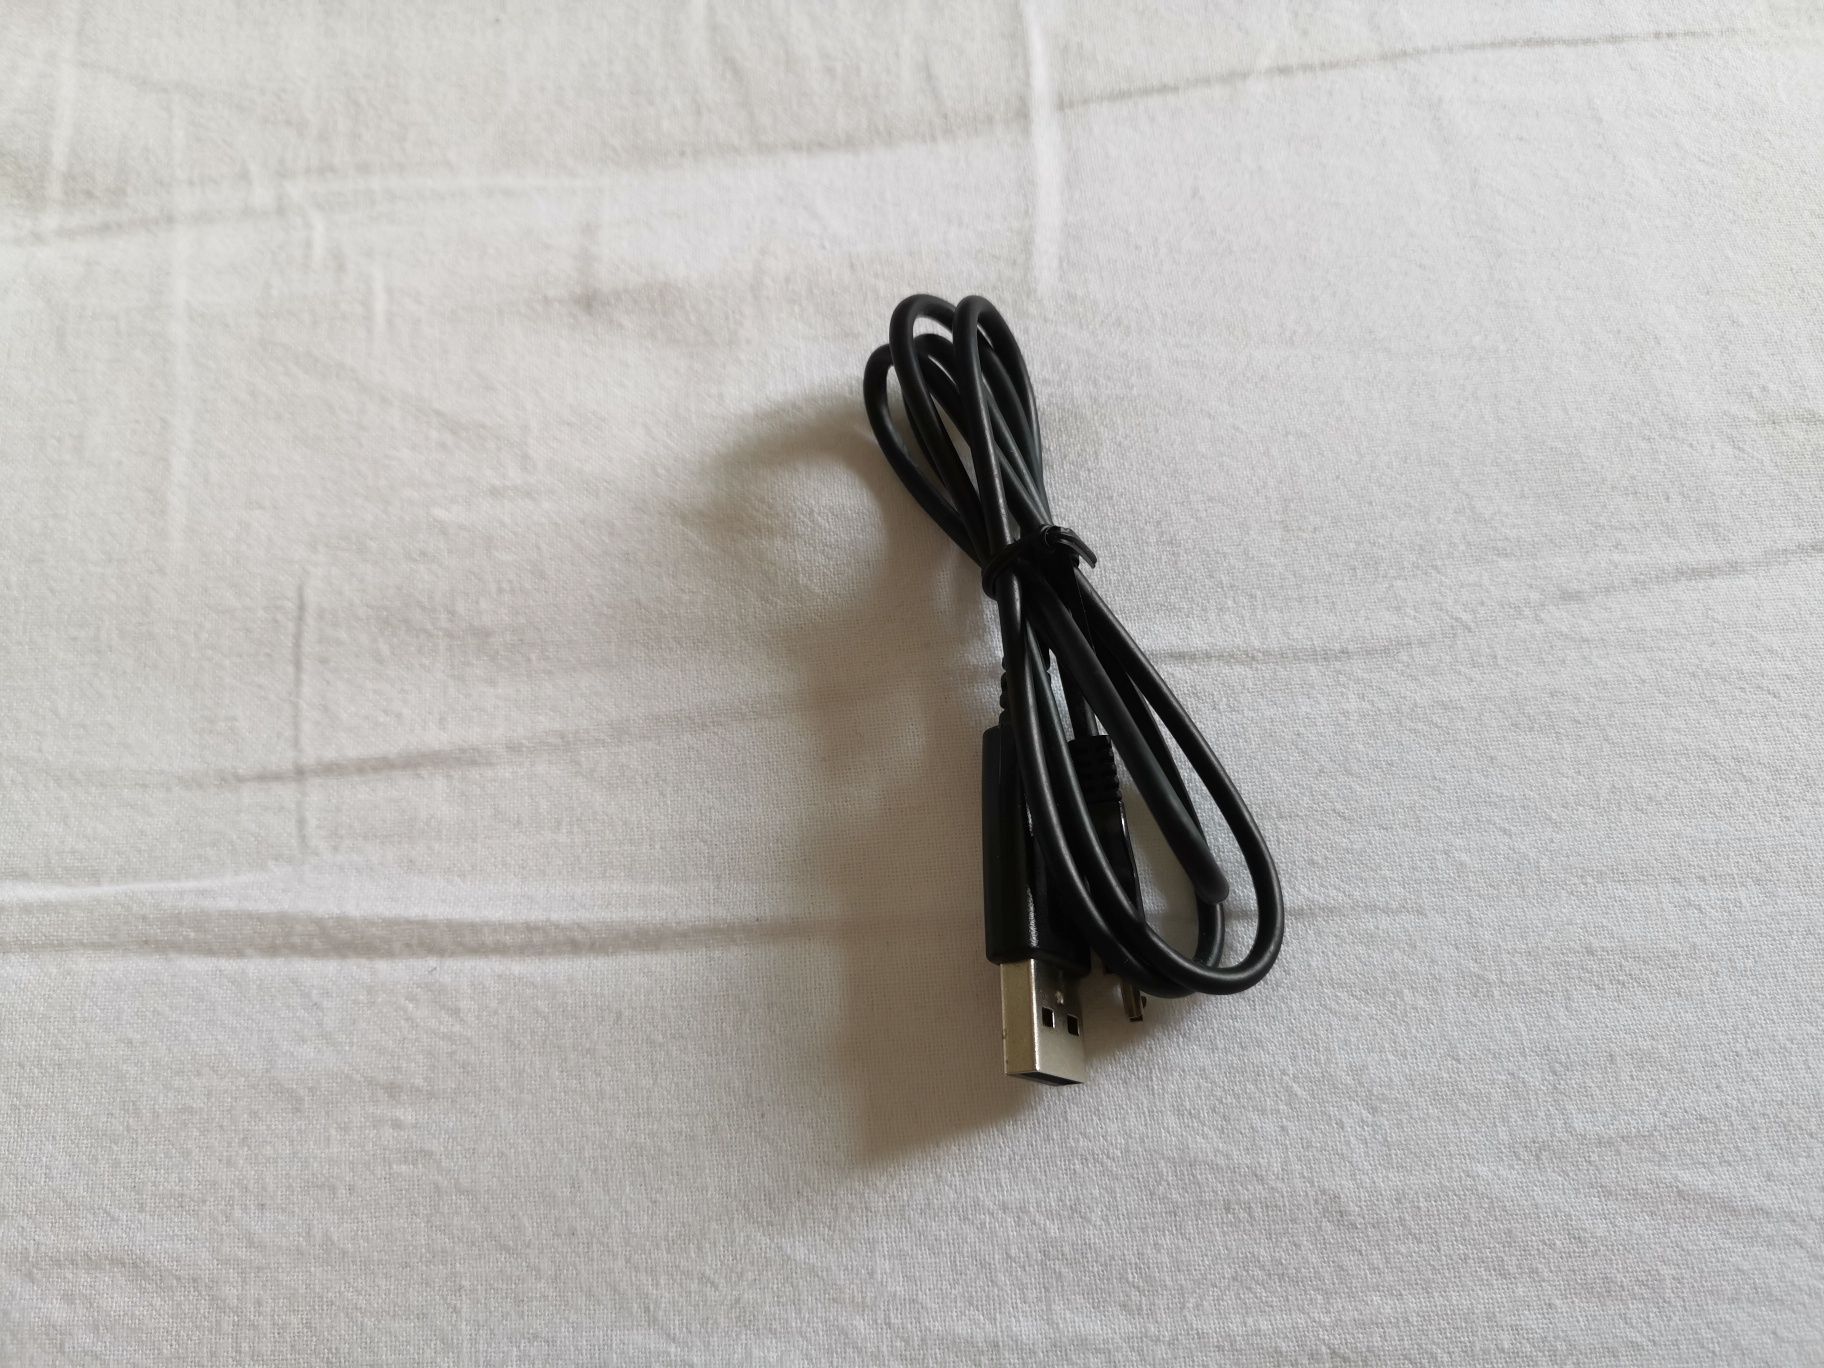 Cablu Original Samsung Micro USB - U2